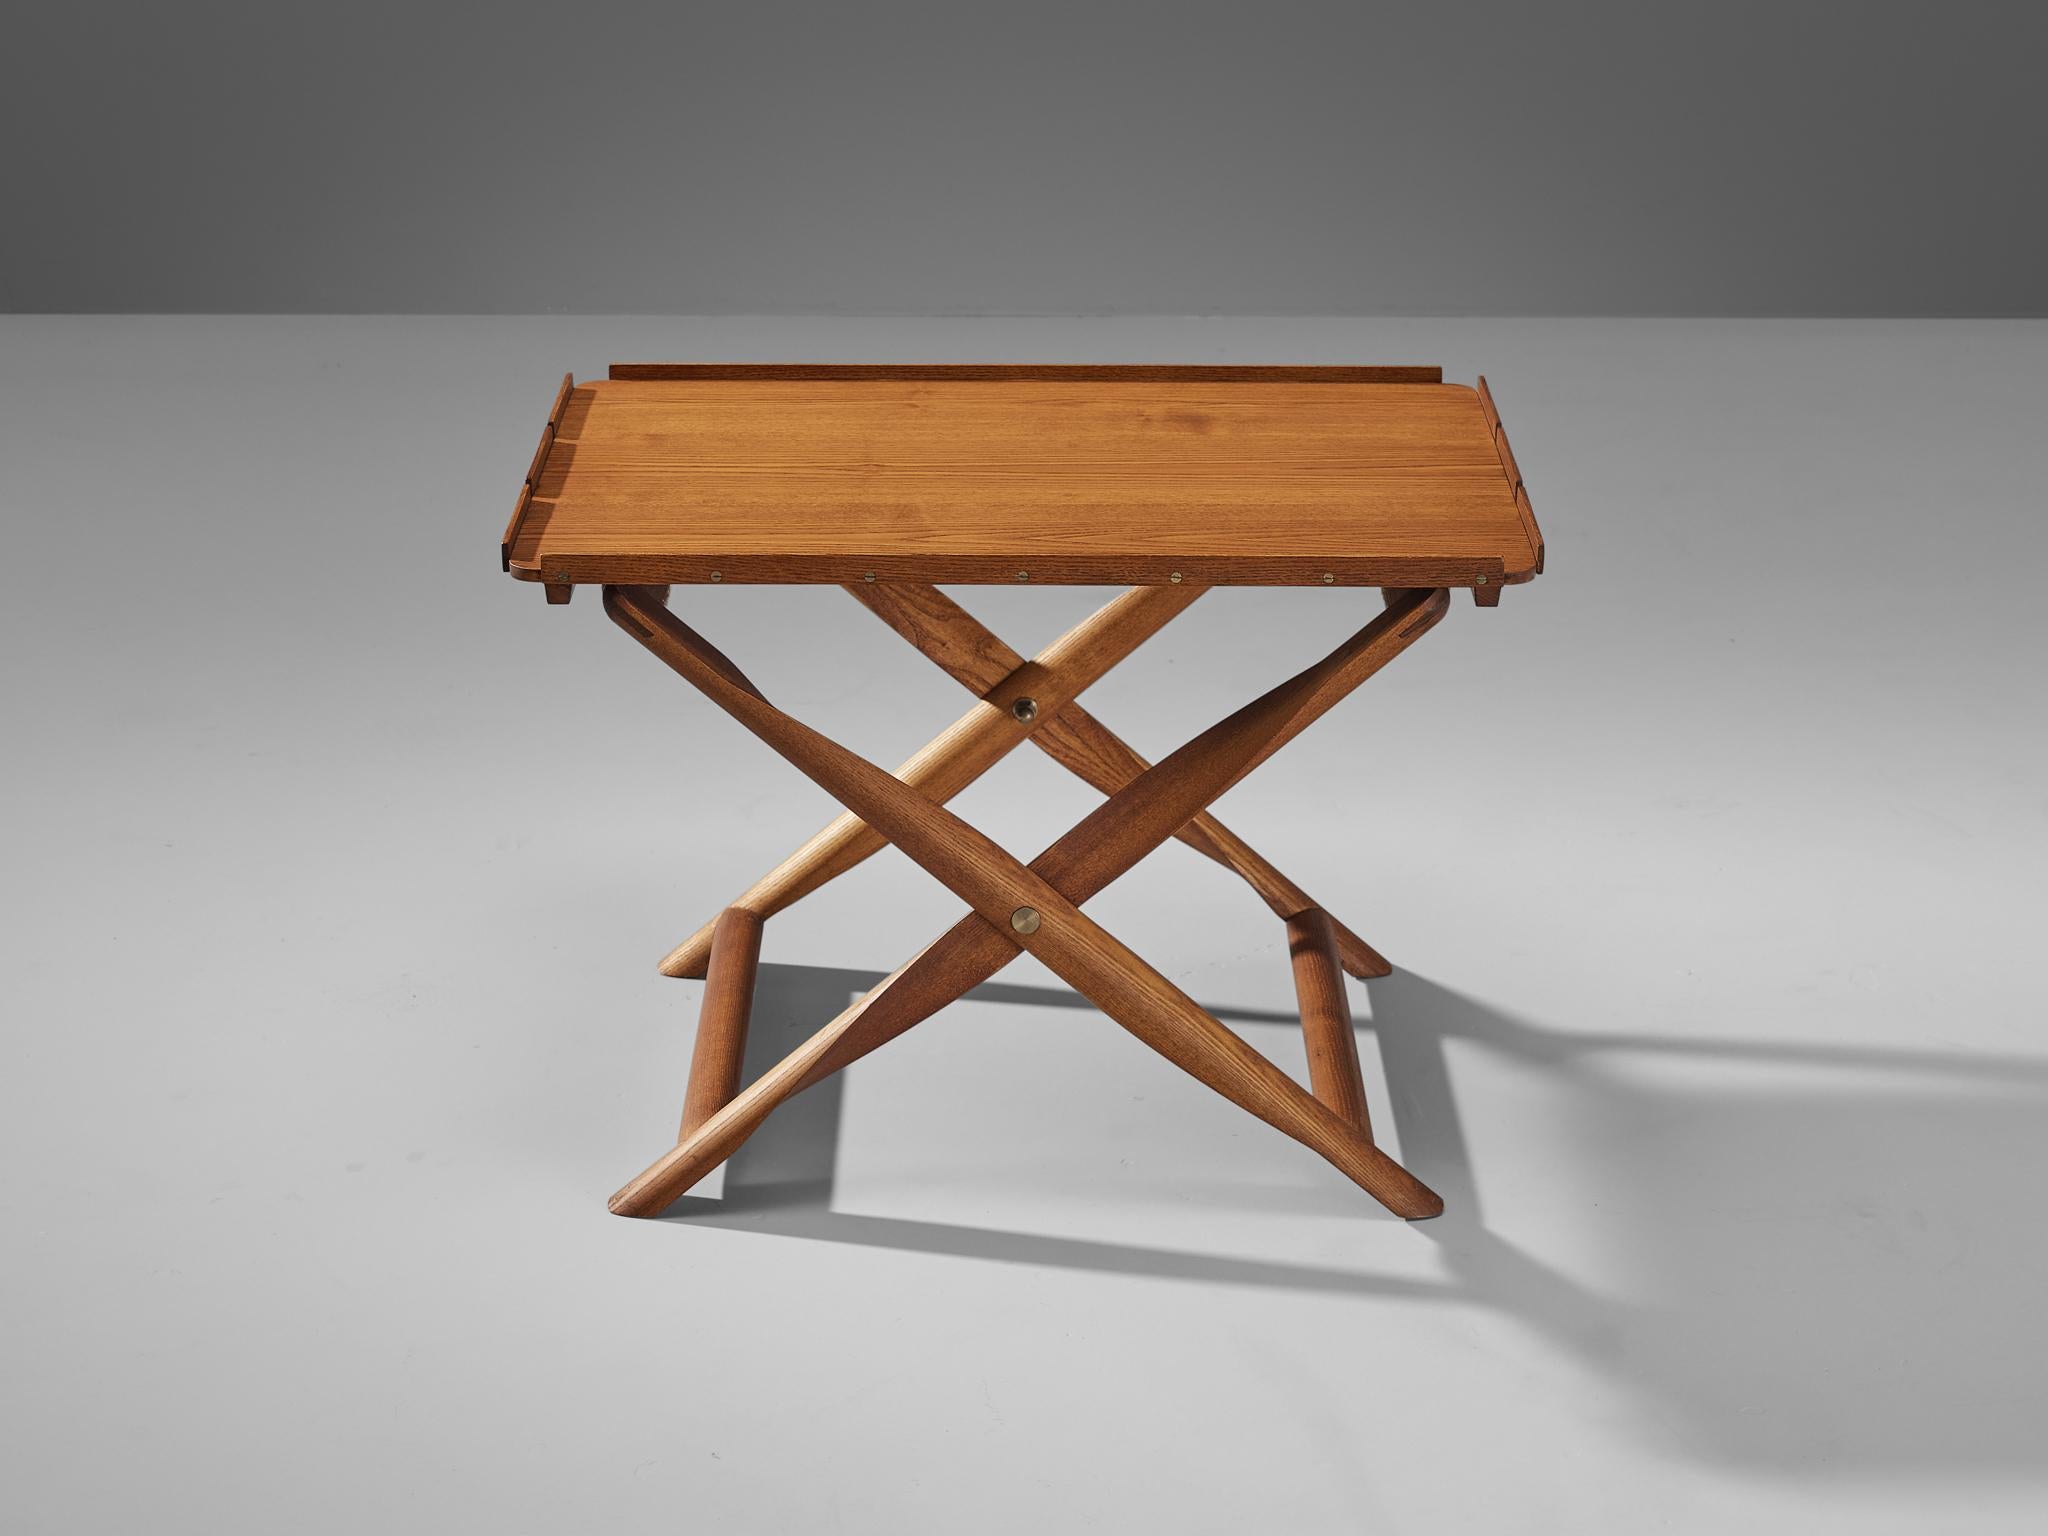 Scandinavian Modern Kaare Klint for Rud, Rasmussens Snedkekier Folding Stool with Tray Table  For Sale